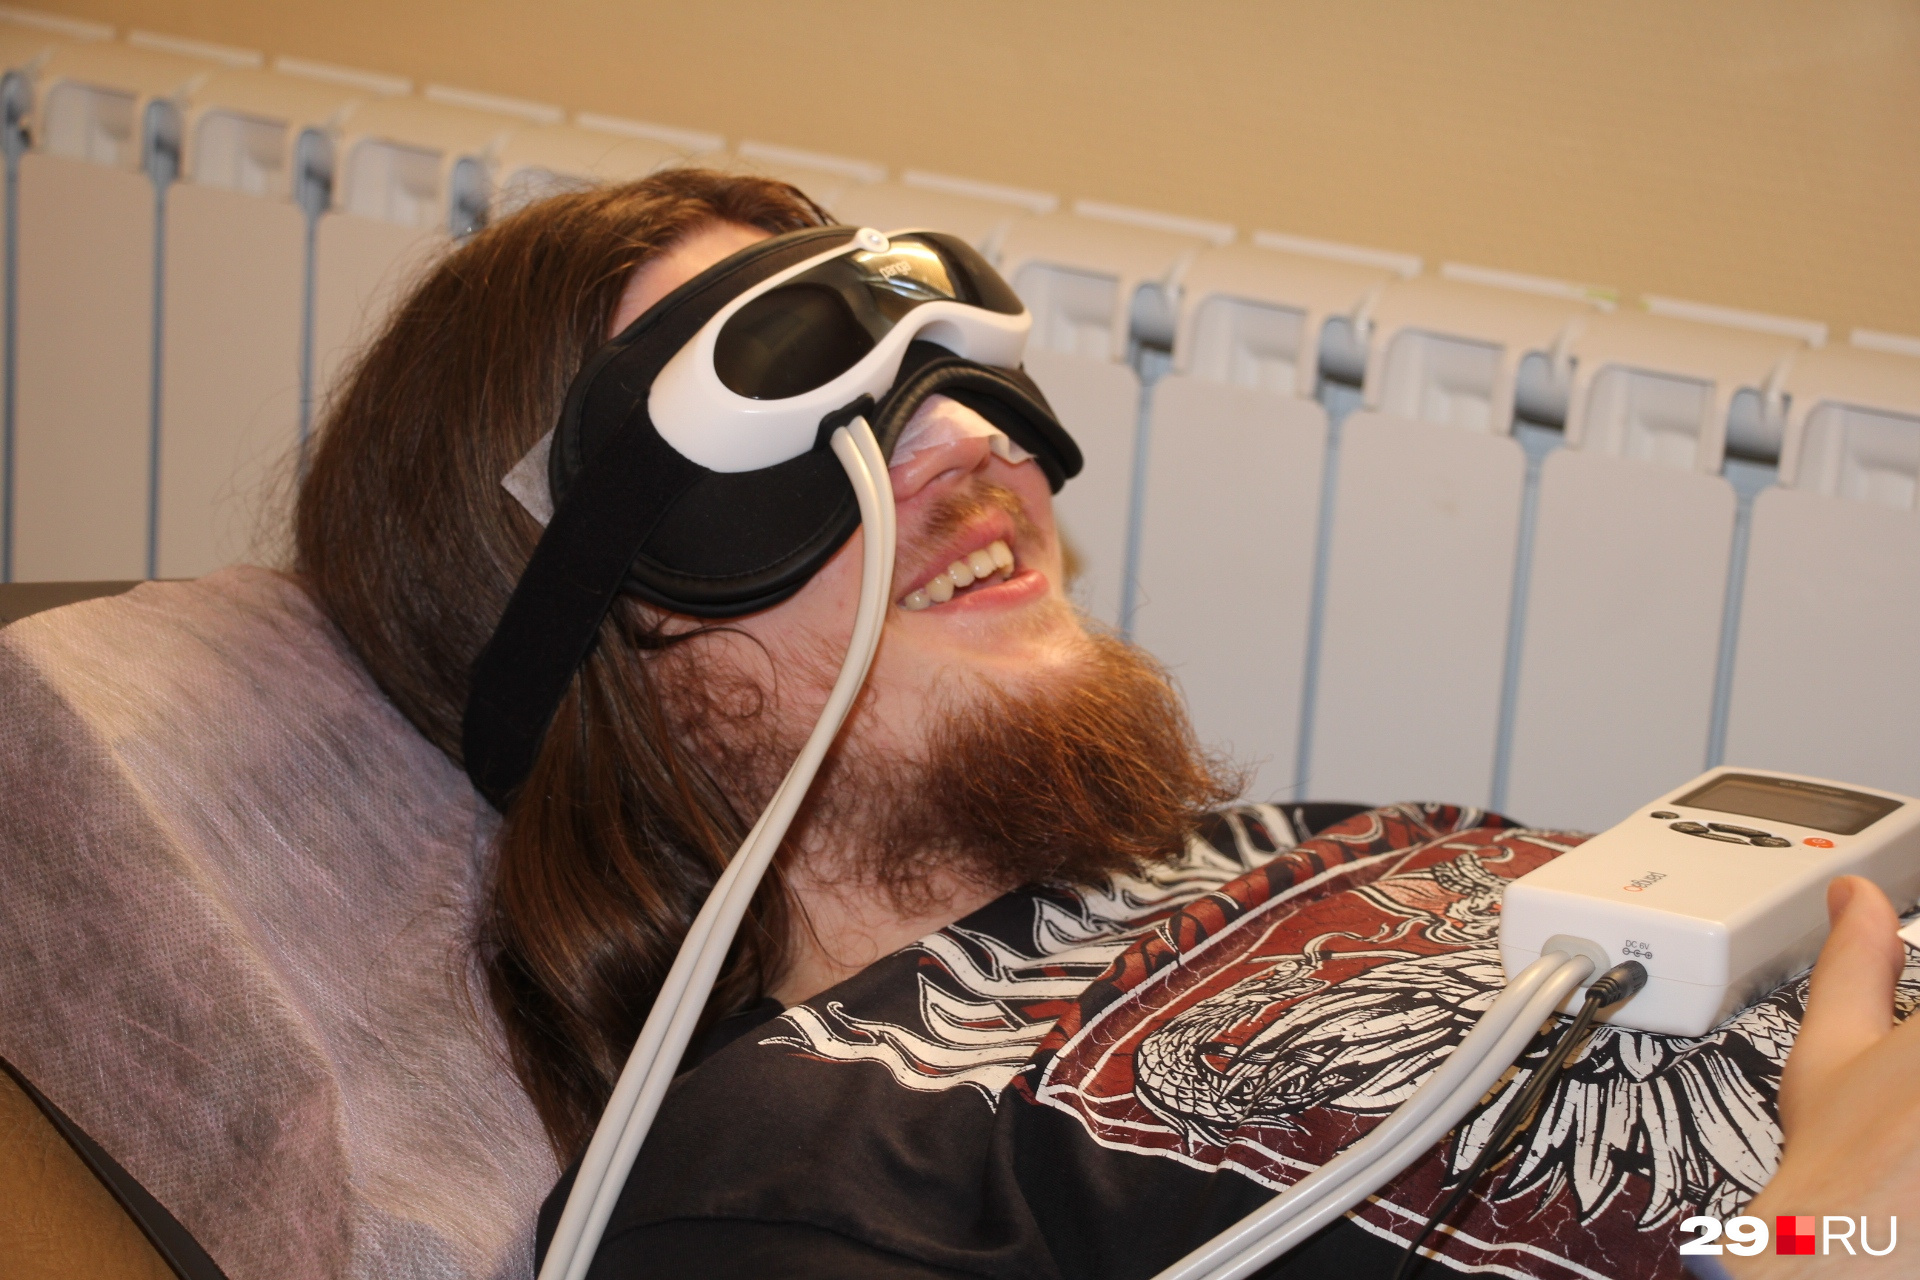 Нет, это не VR-очки. Это массаж-очки